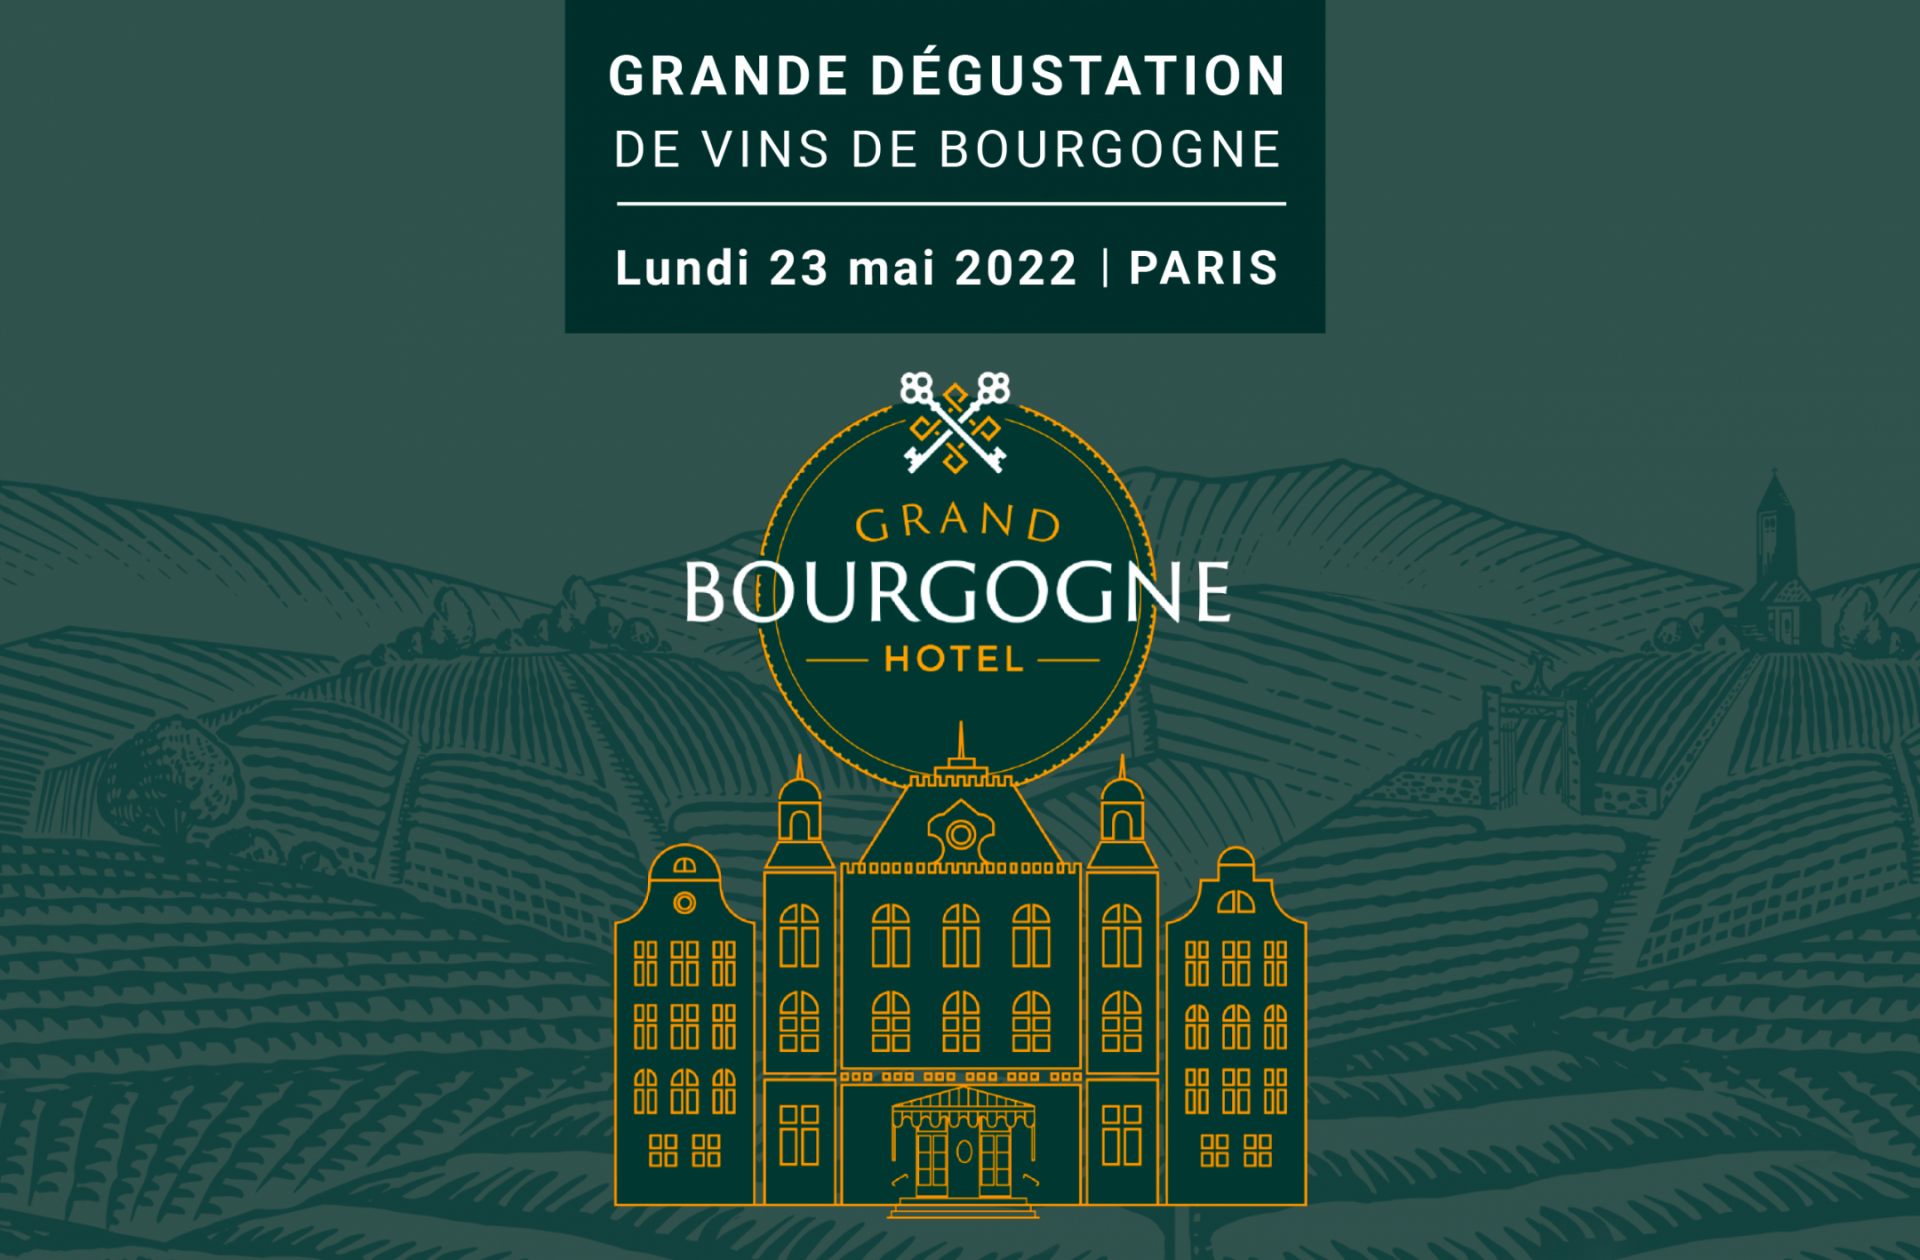 Grand Bourgogne Hôtel